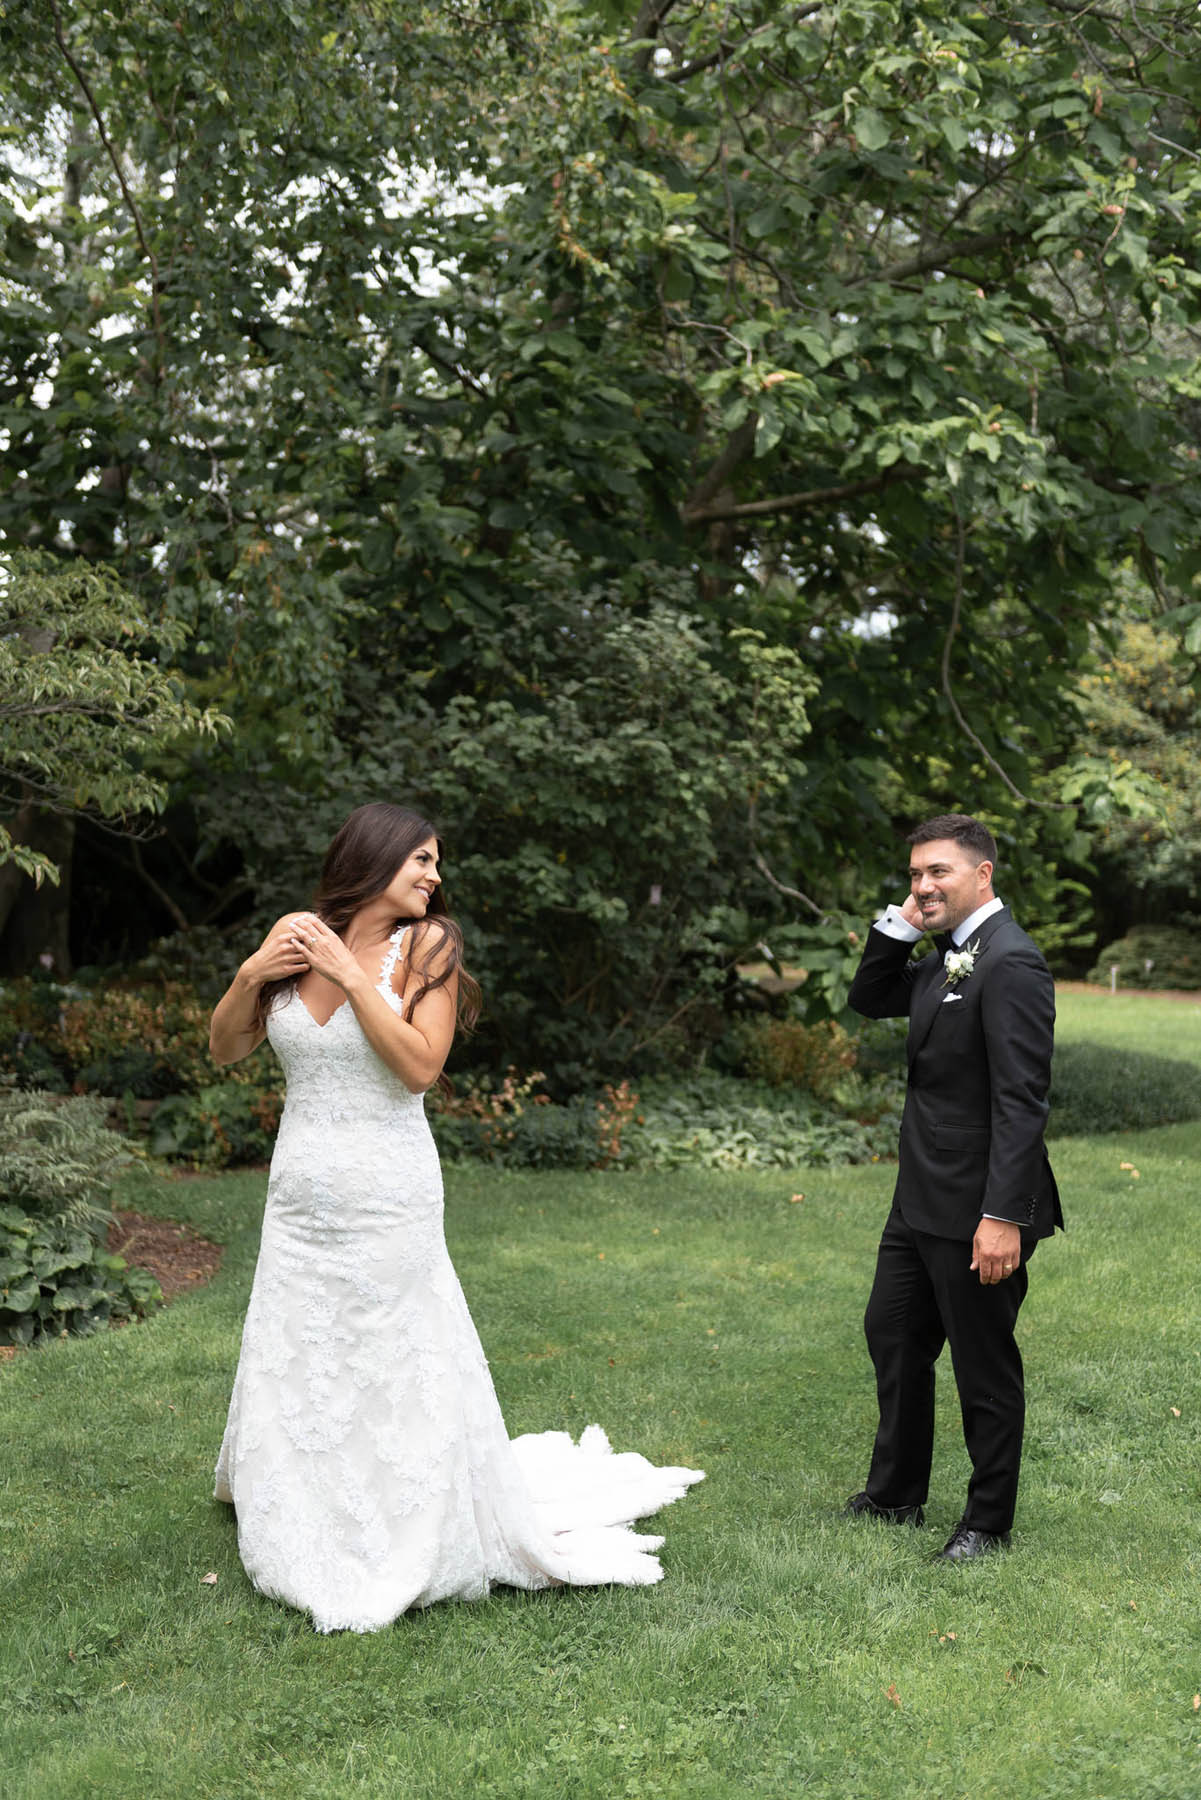 Photographer's Artistry in Capturing Weddings - Kaylee + Chris